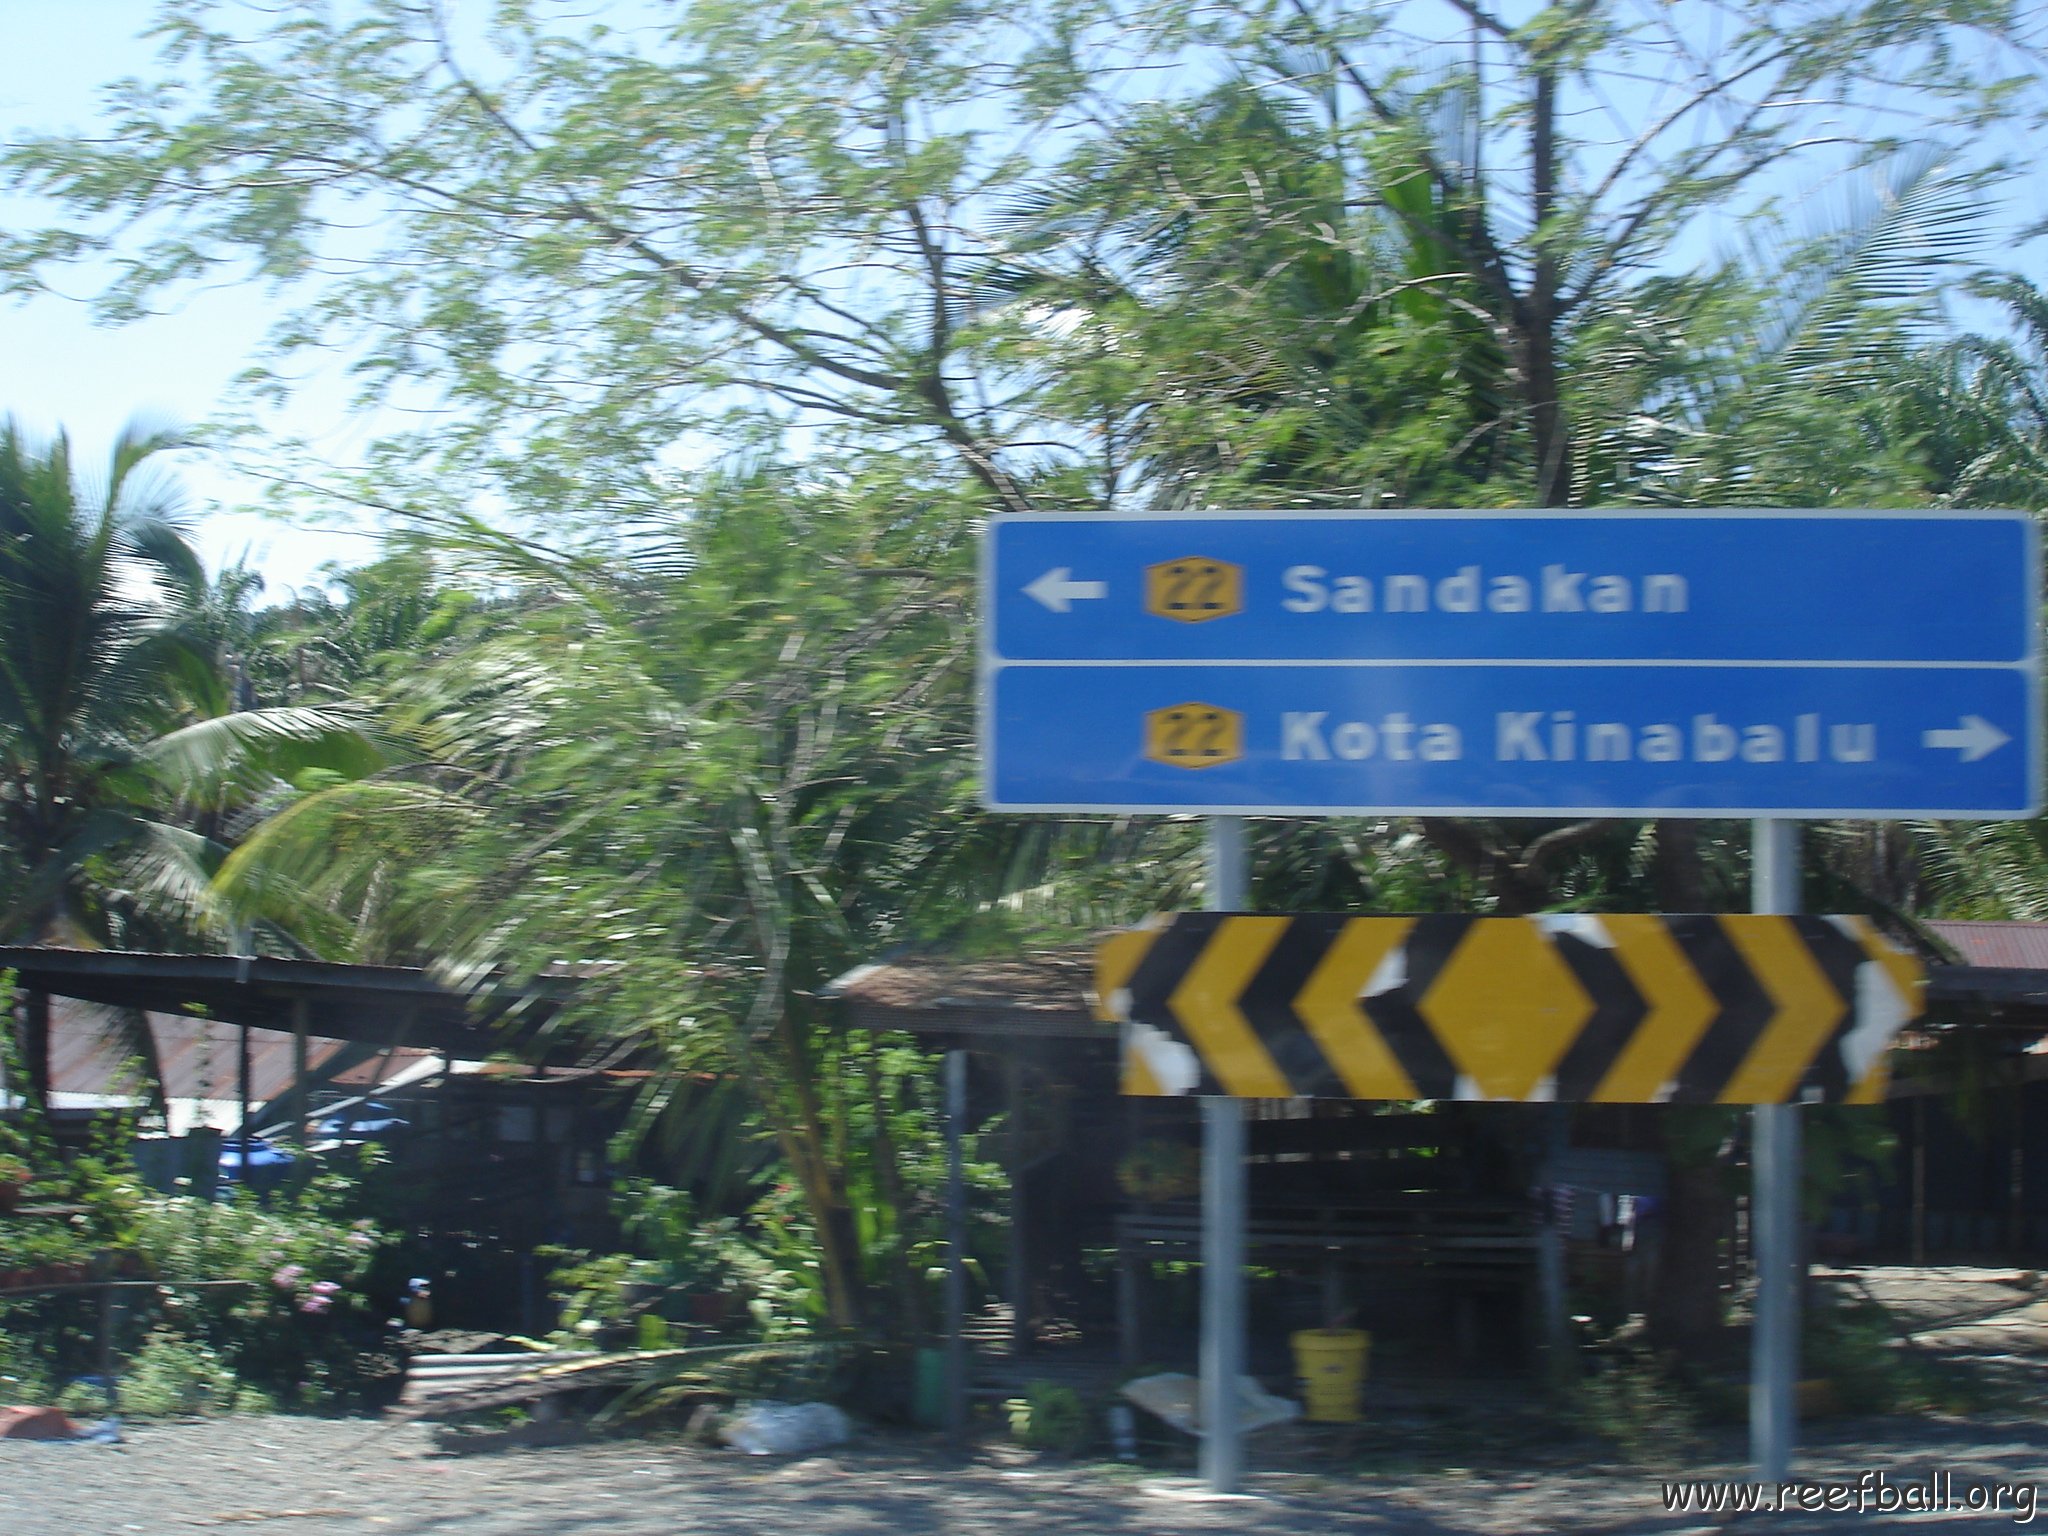 Road trip Sandakan - Kota Kinabalu (26)